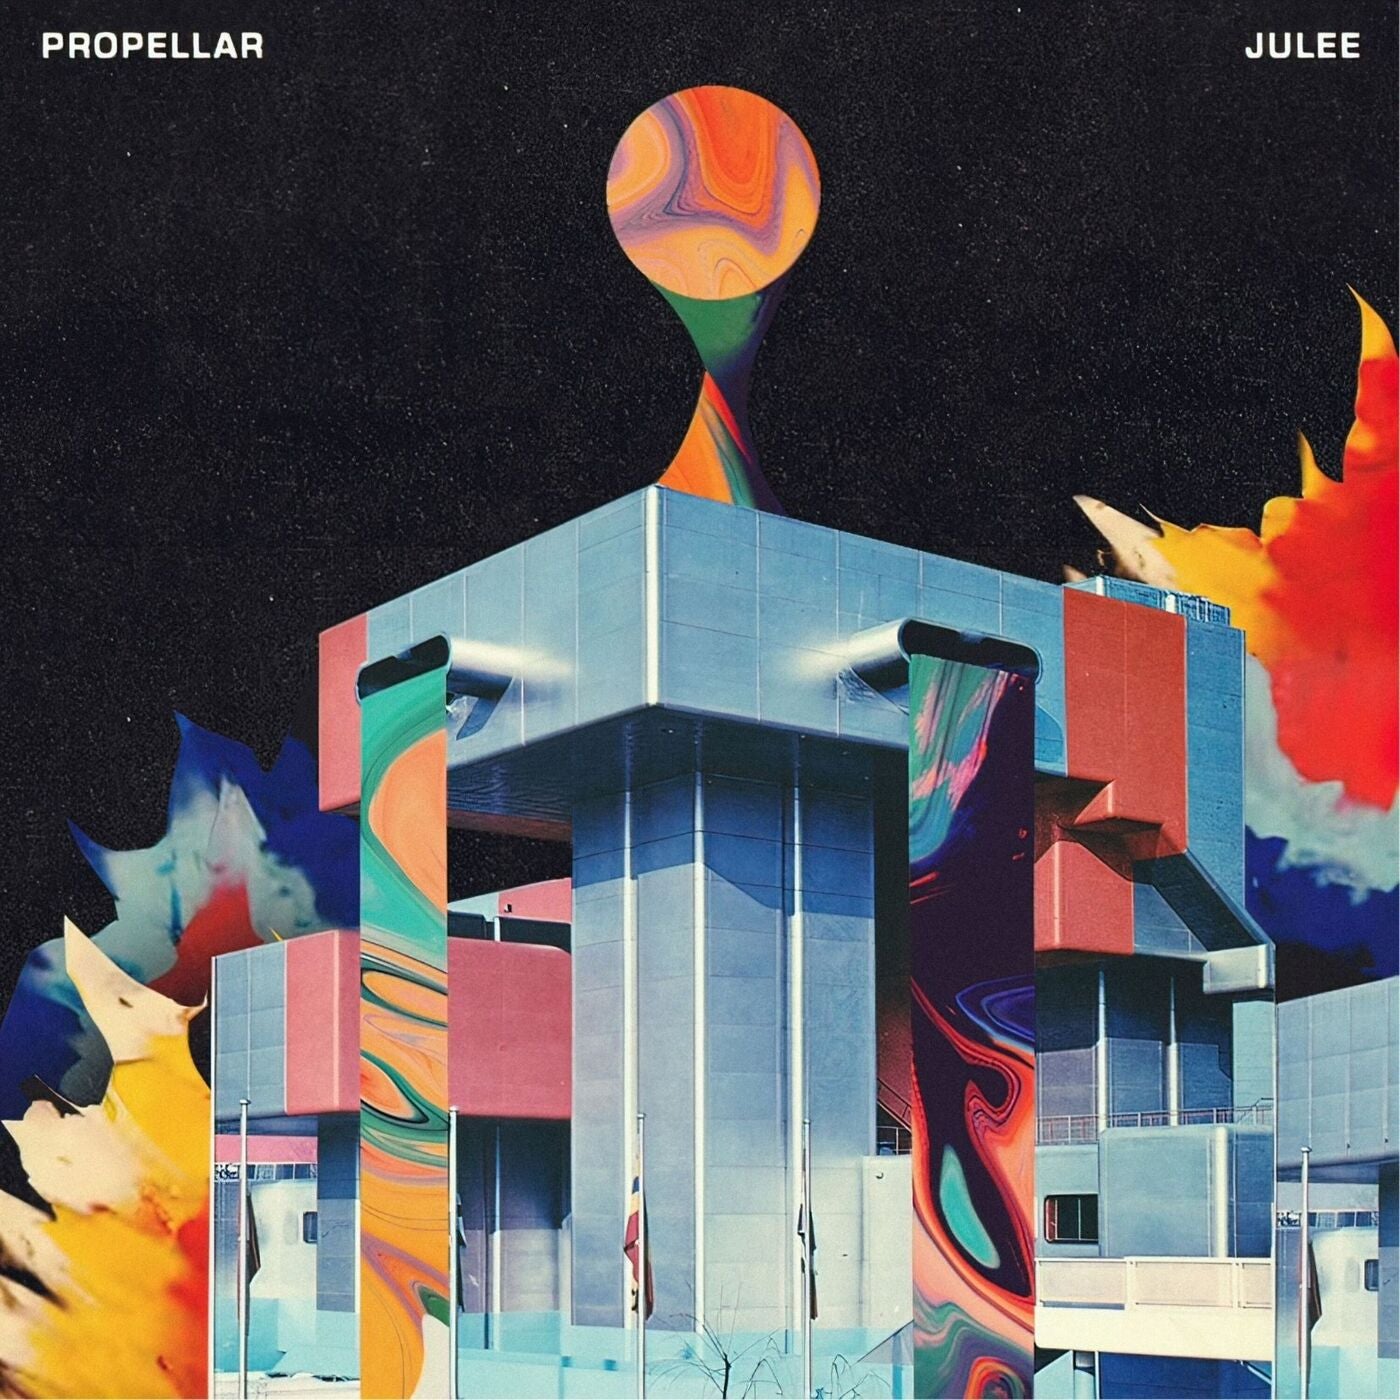 Propellar - Julee Feat. Kalaa (original Mix) on Revolution Radio